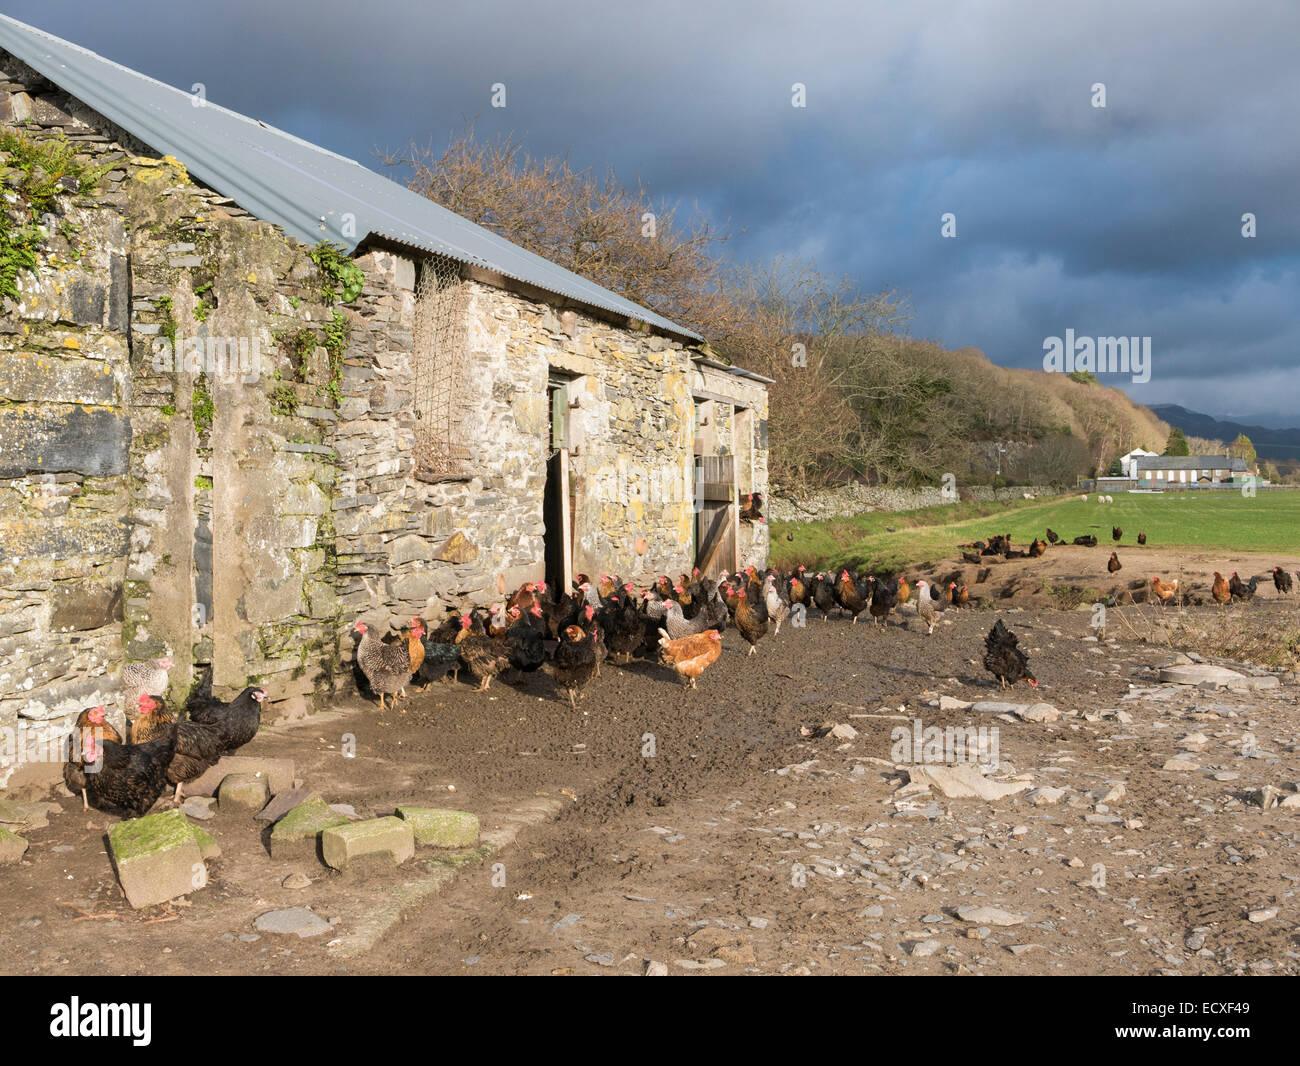 Freerange sujets à l'extérieur une grange en pierre de coup de poulet dans un champ agricole. Gwynedd, au nord du Pays de Galles, Royaume-Uni, Angleterre Banque D'Images